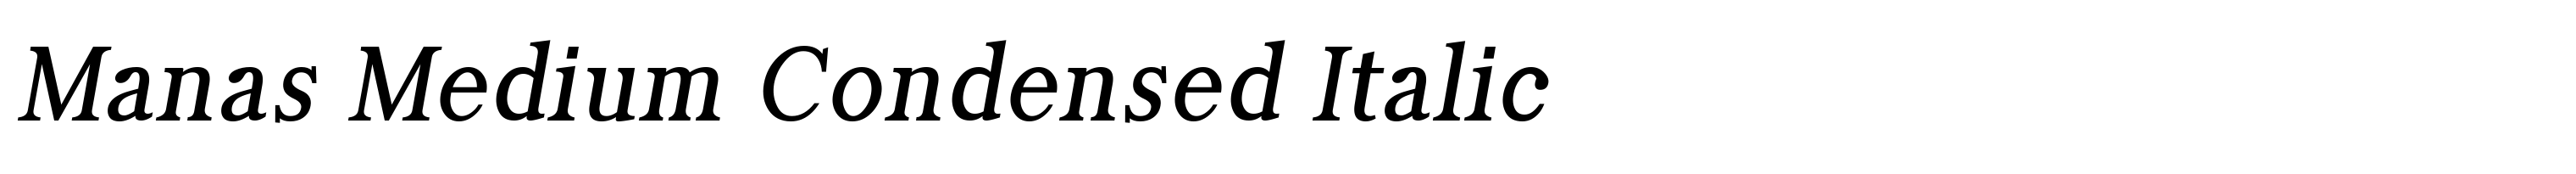 Manas Medium Condensed Italic